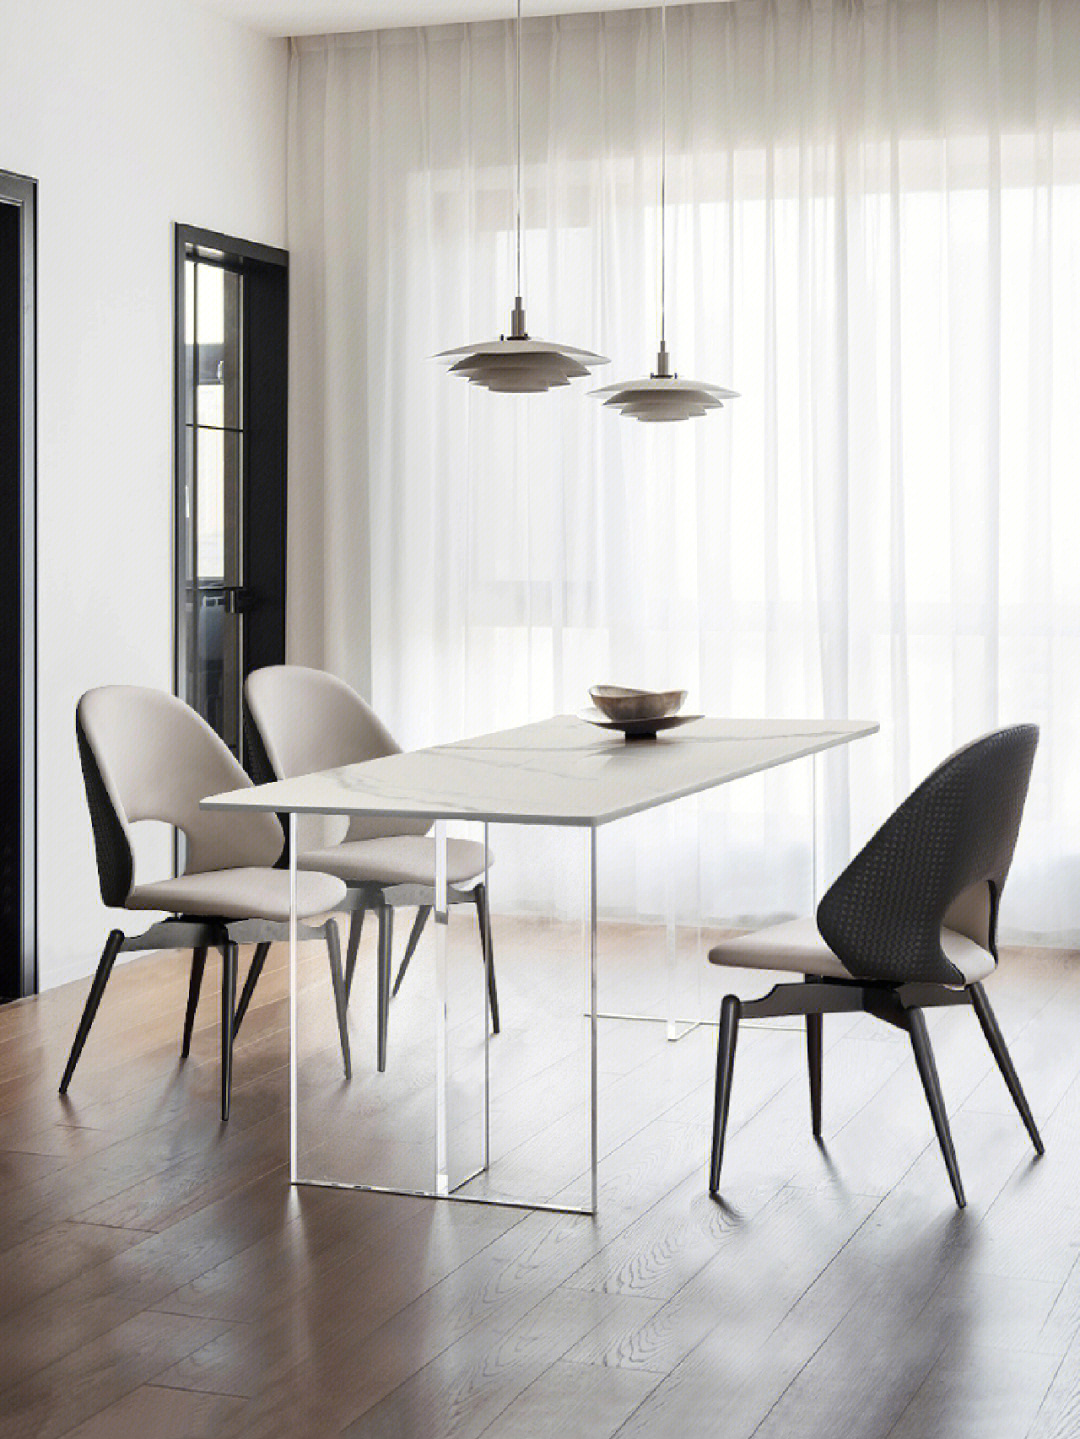 岩板餐桌德利丰意式极简透明北欧设计网红长方形家用桌椅